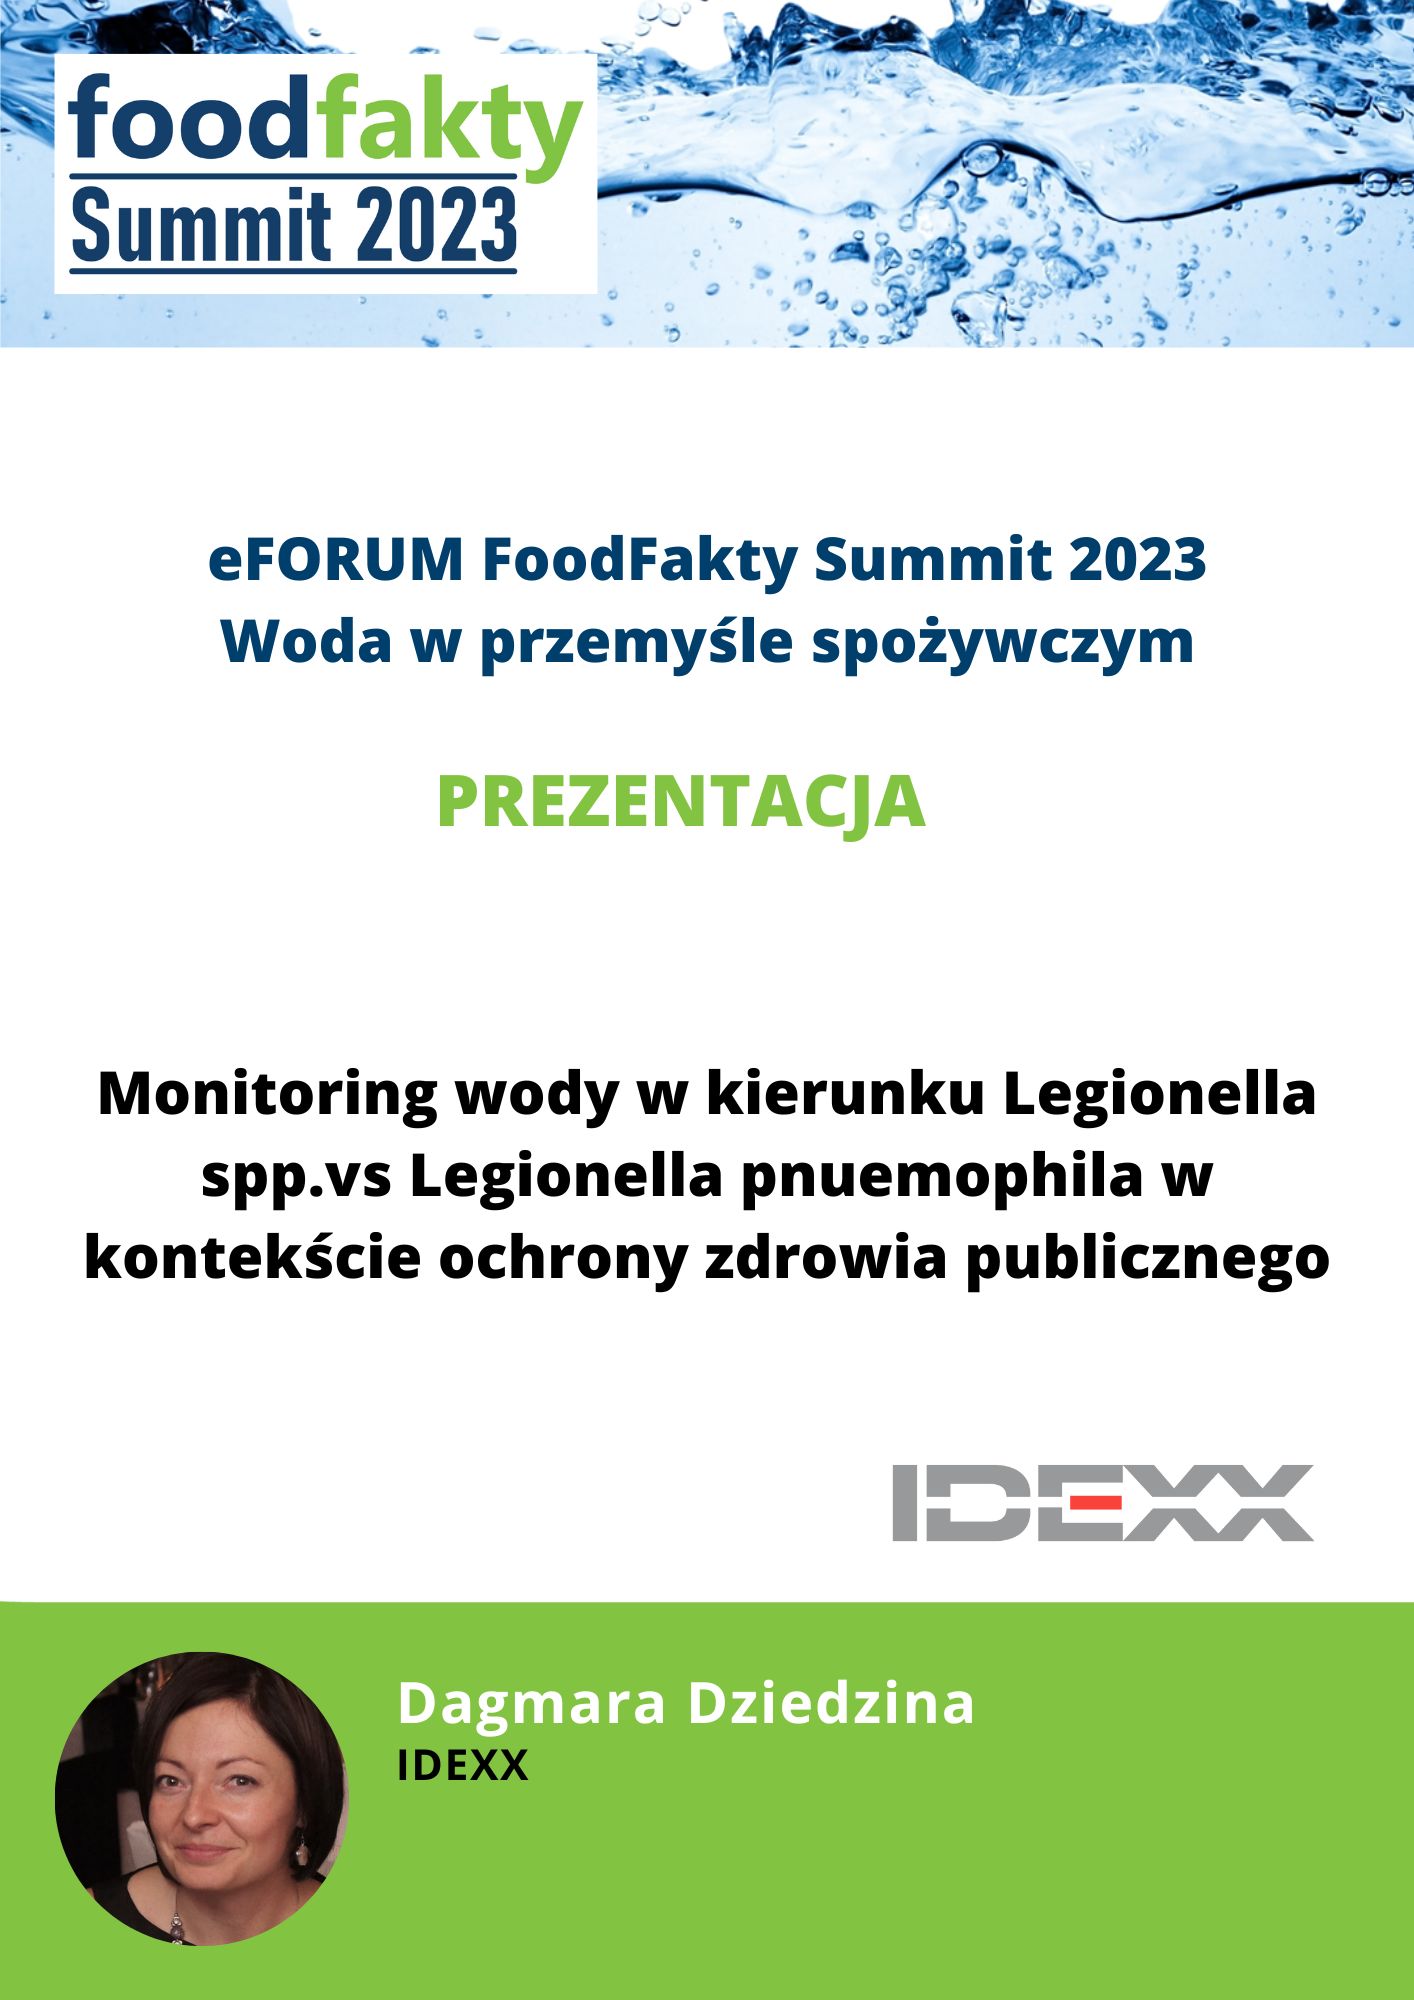 FoodFakty Summit Woda w przemyśle spożywczym - prezentacja IDEXX